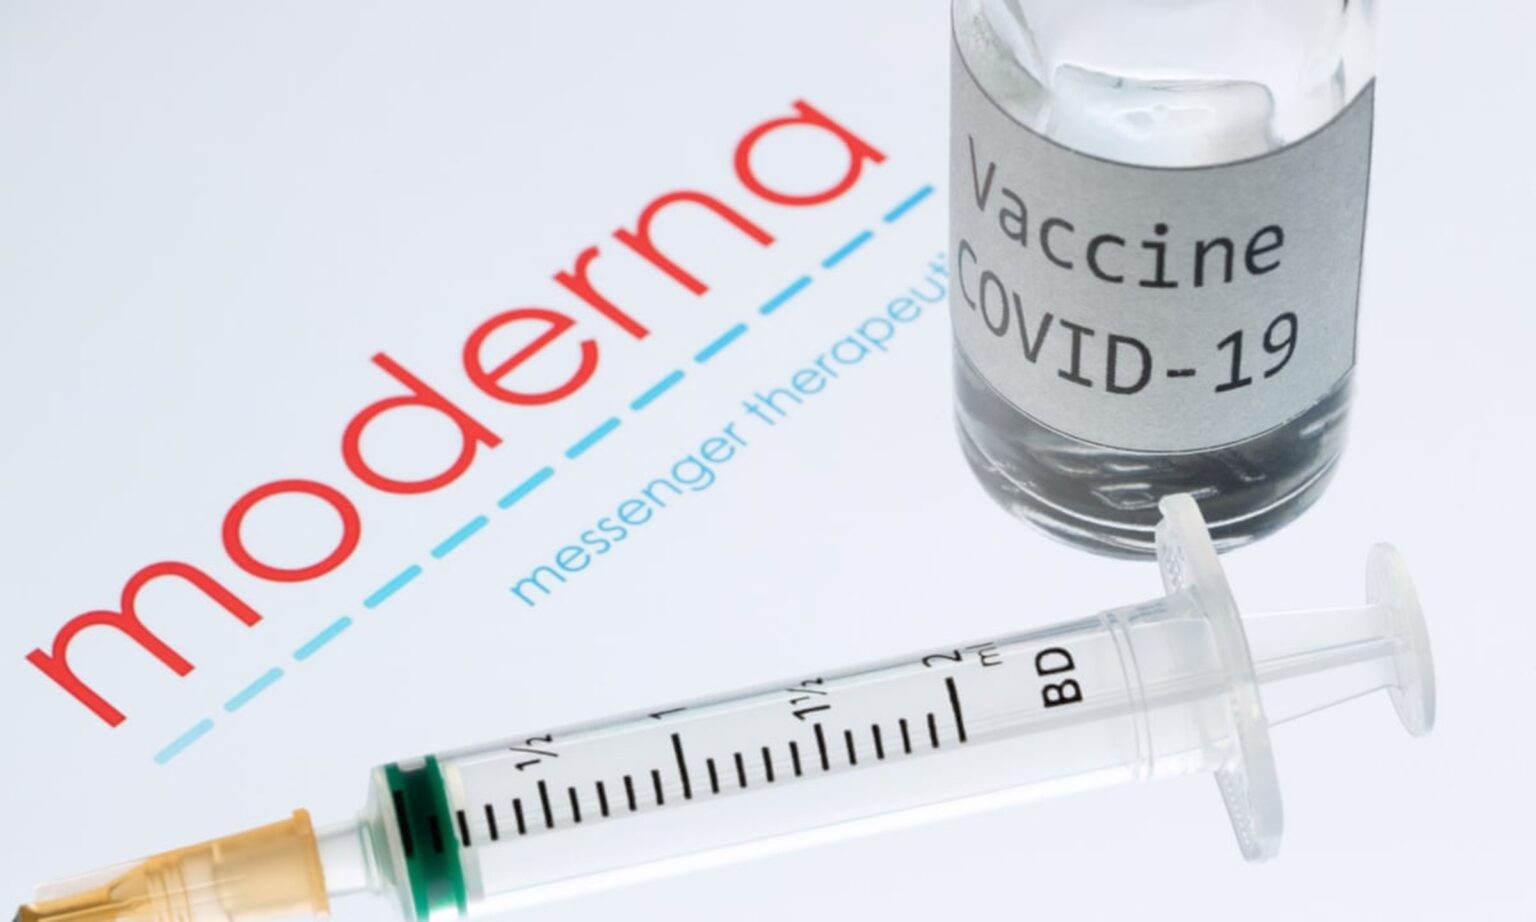 ¿Habrá una vacuna para el COVID-19 pronto? Entérate sobre la utorización de emergencia de Moderna a la FDA.